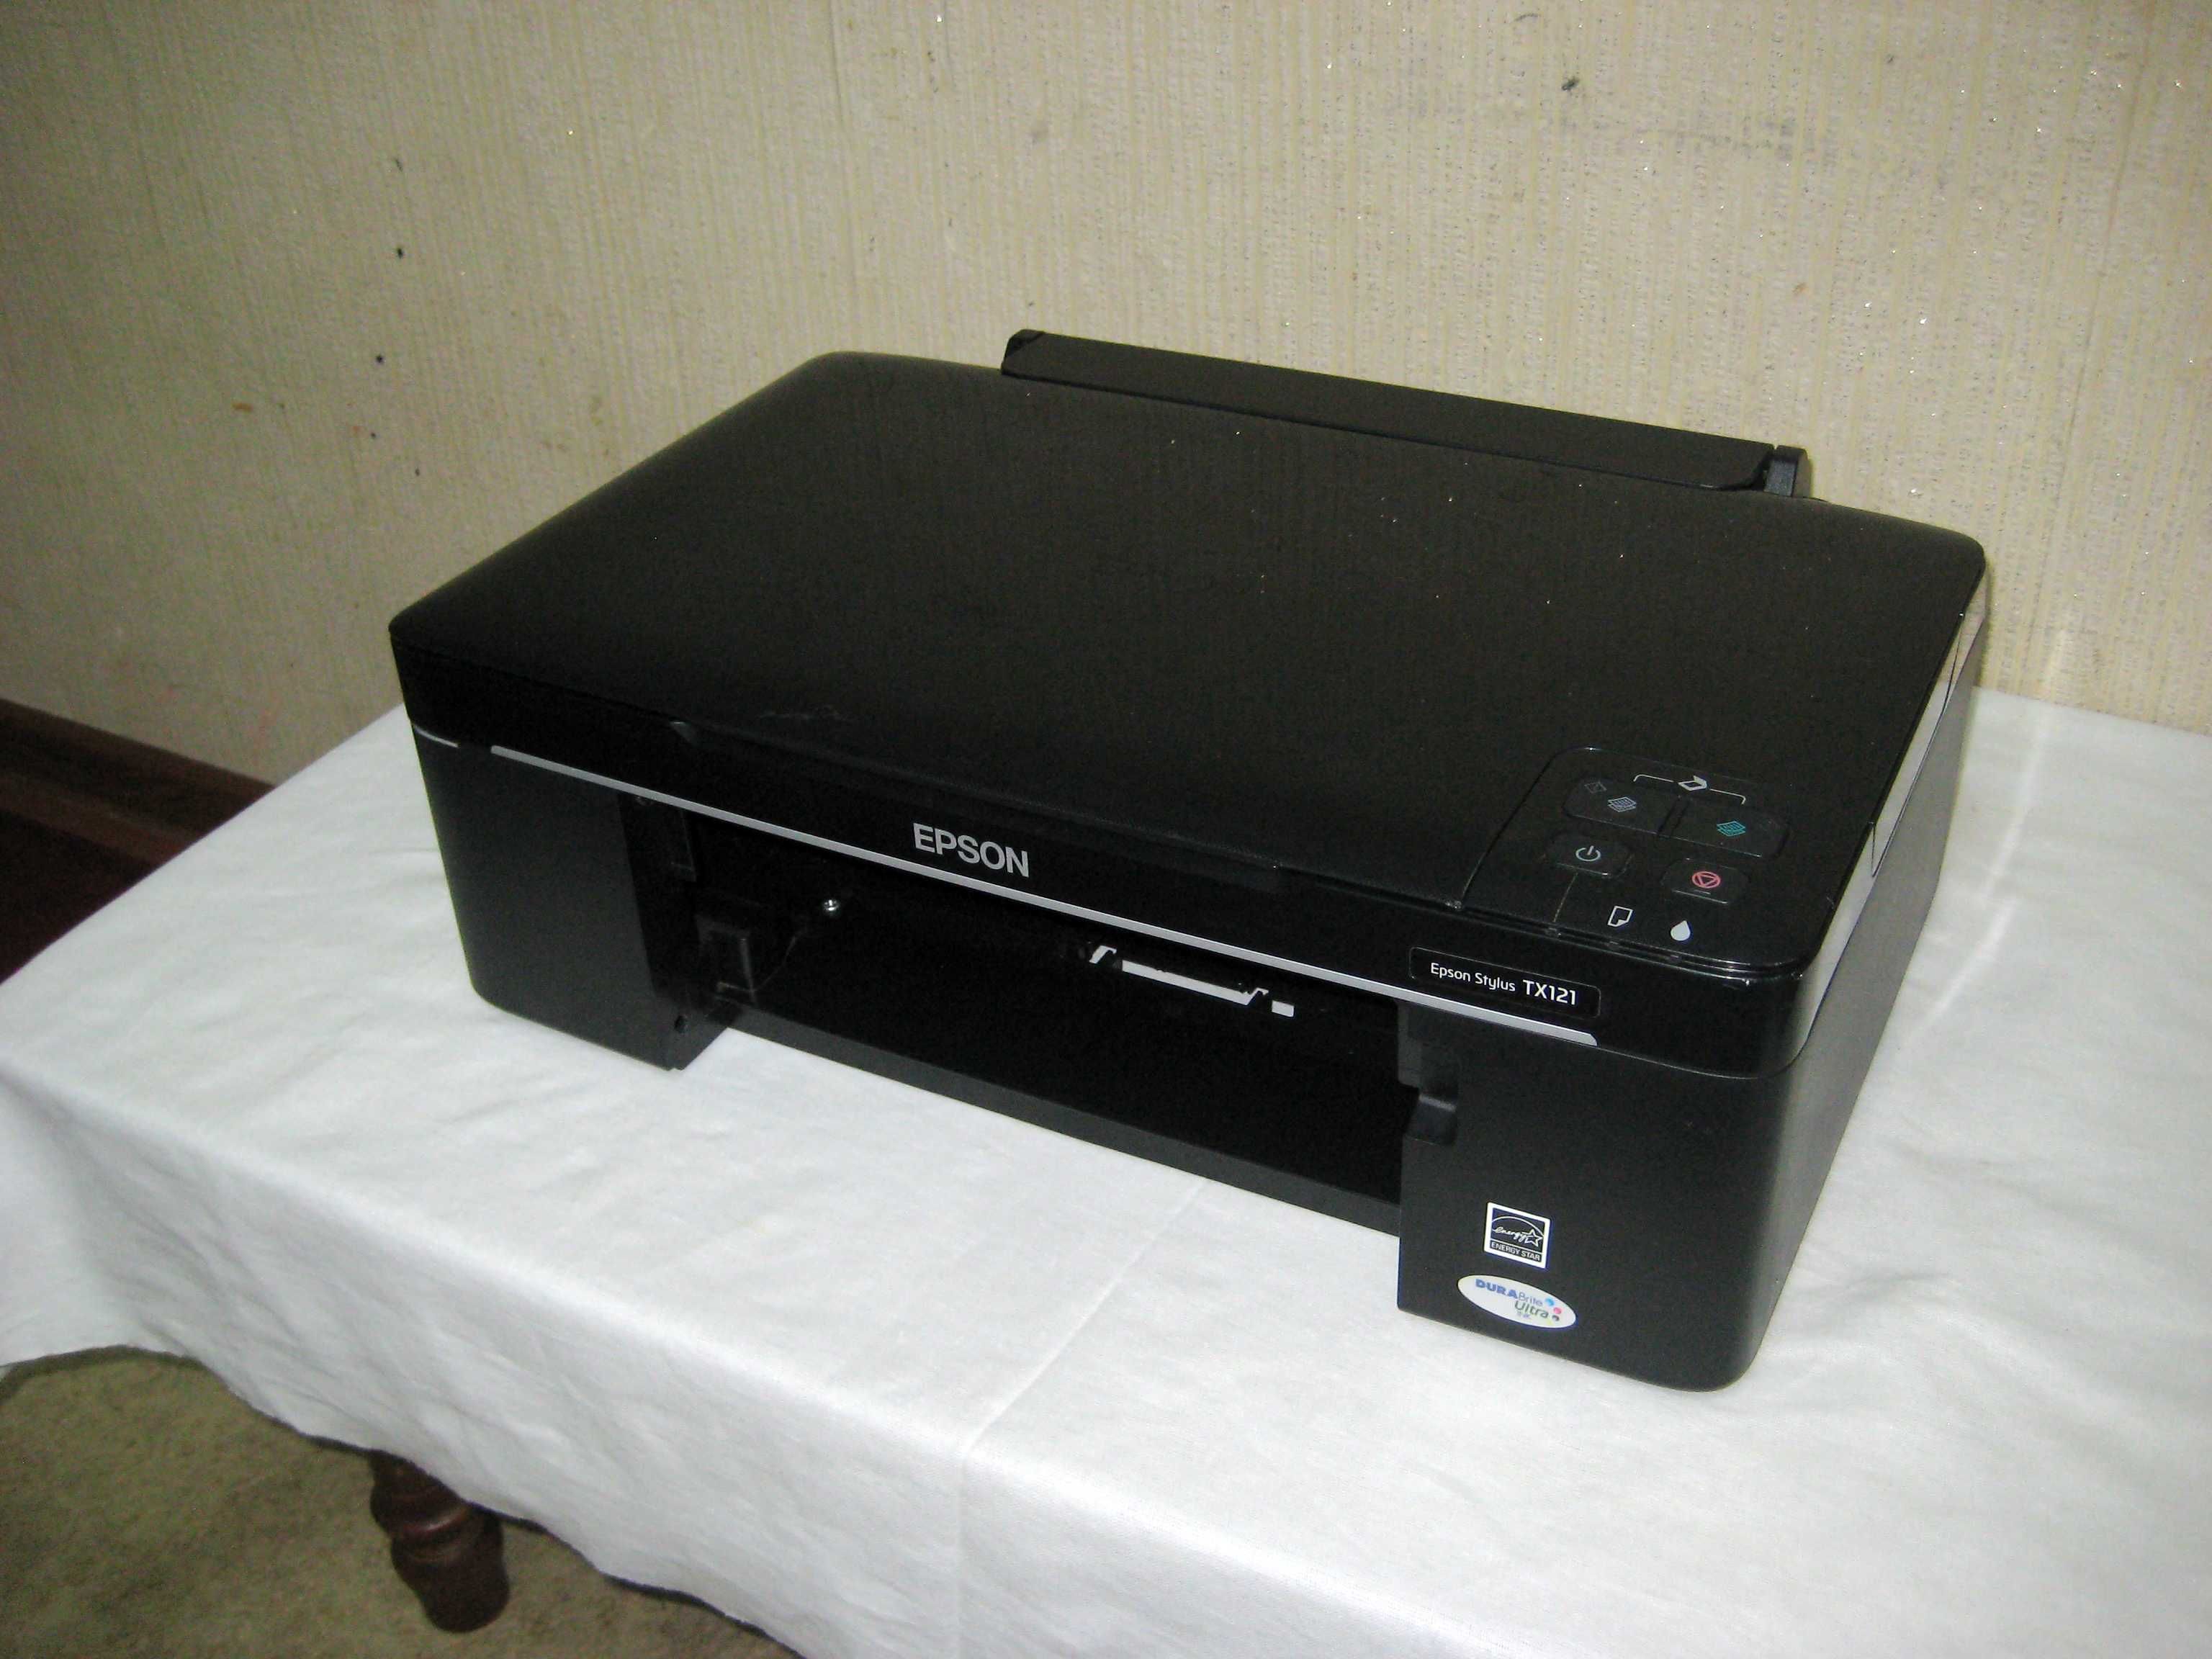 Принтер цветной EPSON TX121 сам аппарат рабочий но не печатает !